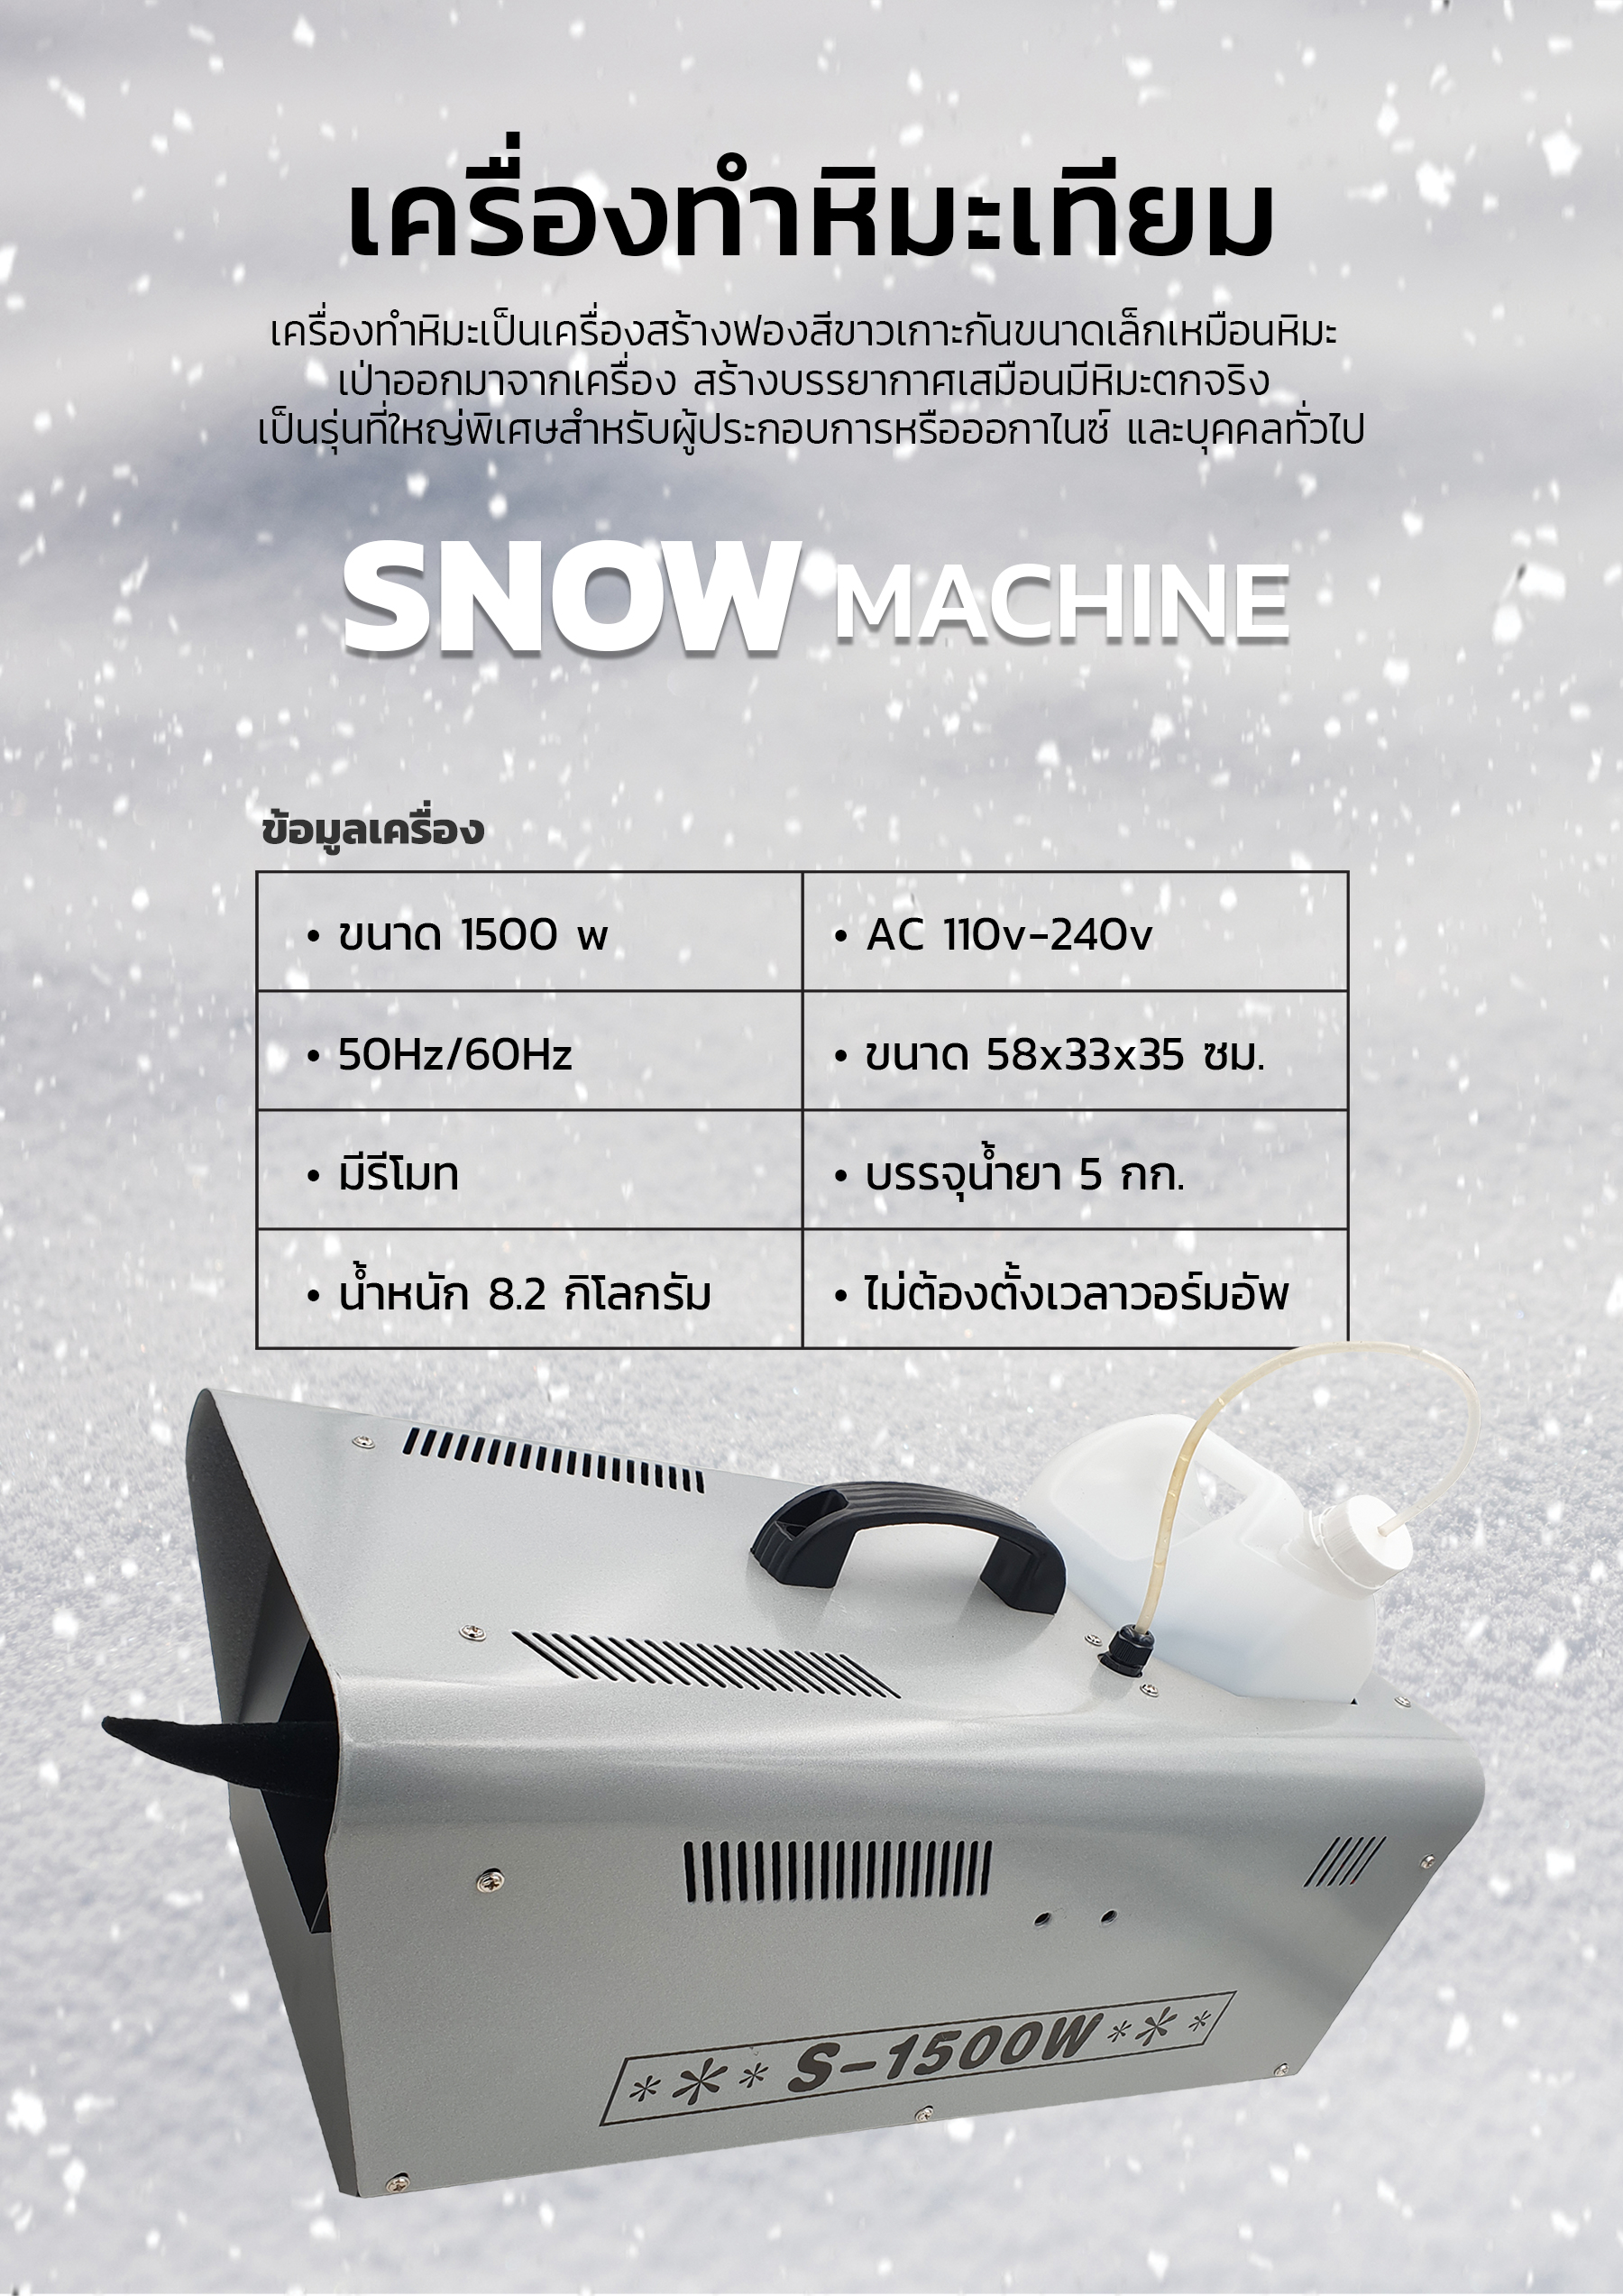 เครื่องทำหิมะ, เครื่องสร้างหิมะจำลอง, เครื่องพ่นหิมะ, เครื่องจำลองหิมะ, น้ำยาทำหิมะ, น้ำยาเครื่องหิมะ